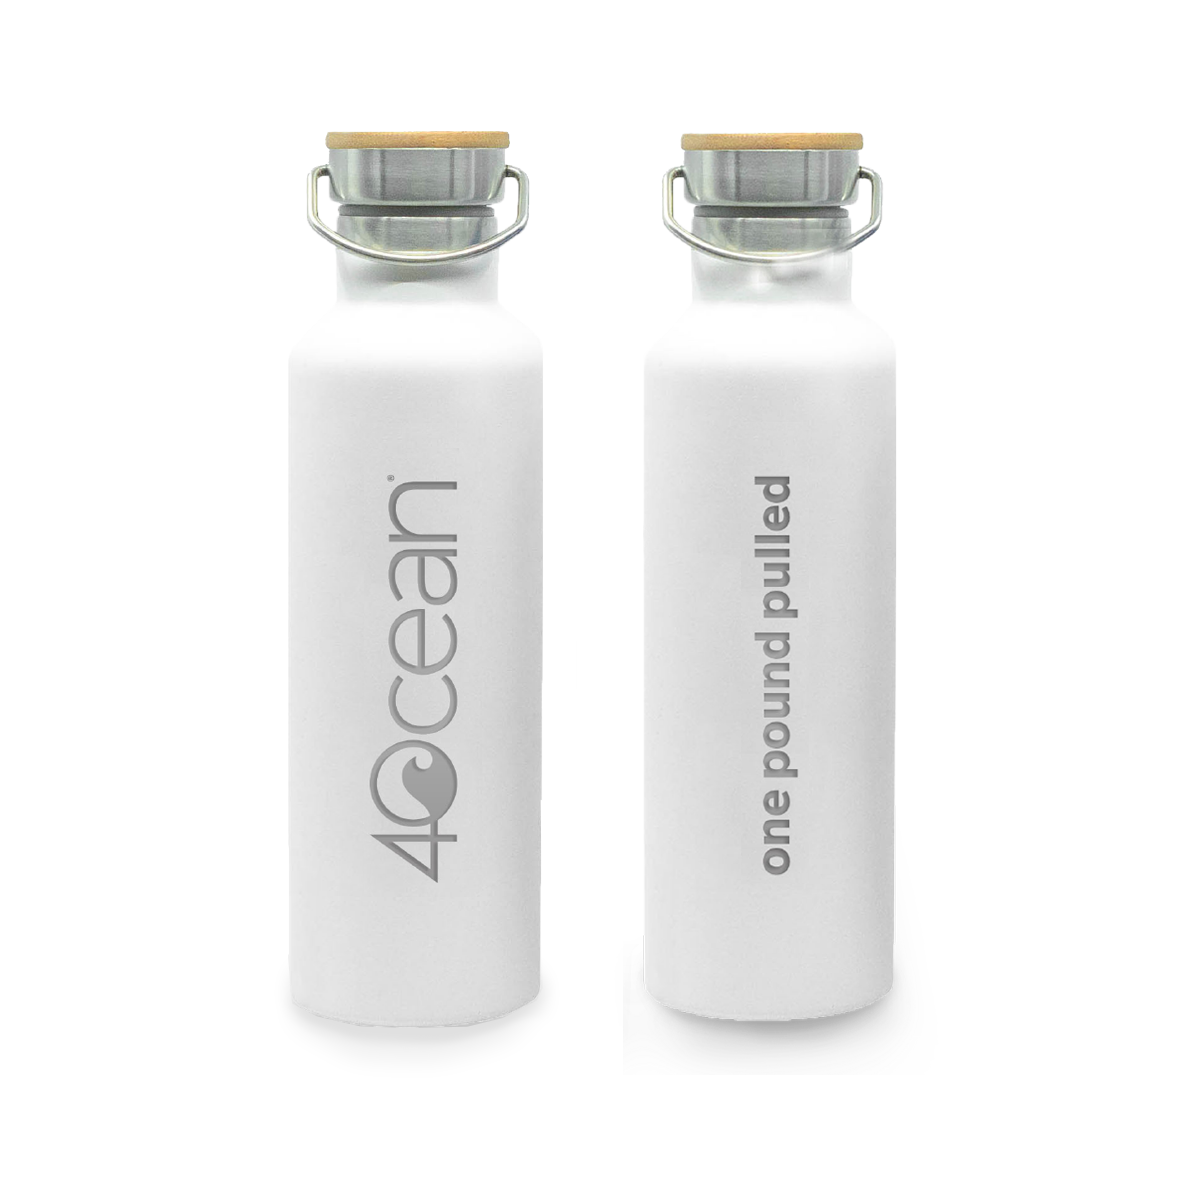 4ocean Reusable Bottle - 4ocean